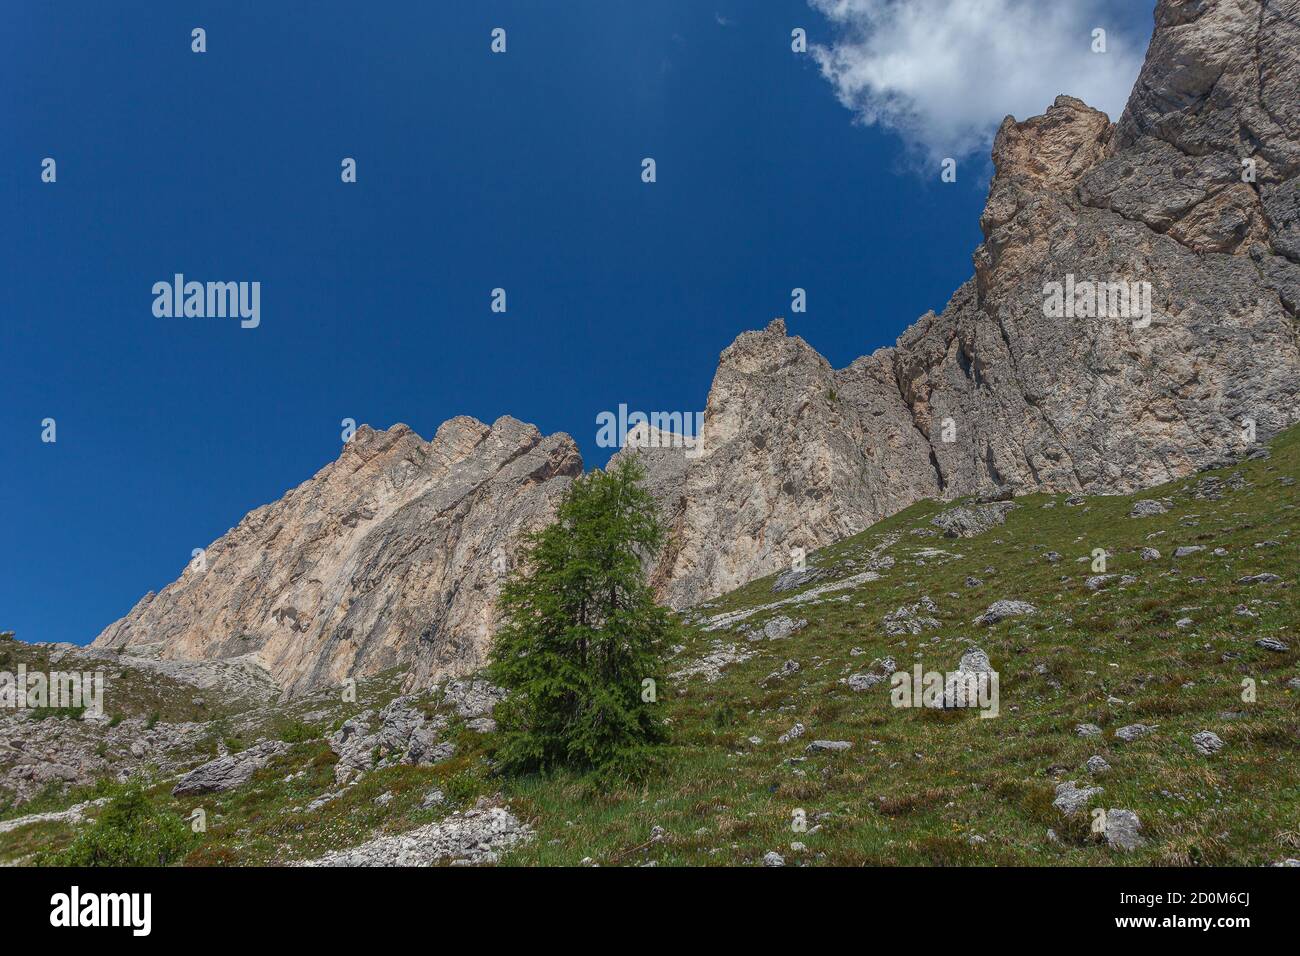 Larici solitari ai piedi di un imponente muro dolomitico, Settsass, Dolomiti, Italia Foto Stock